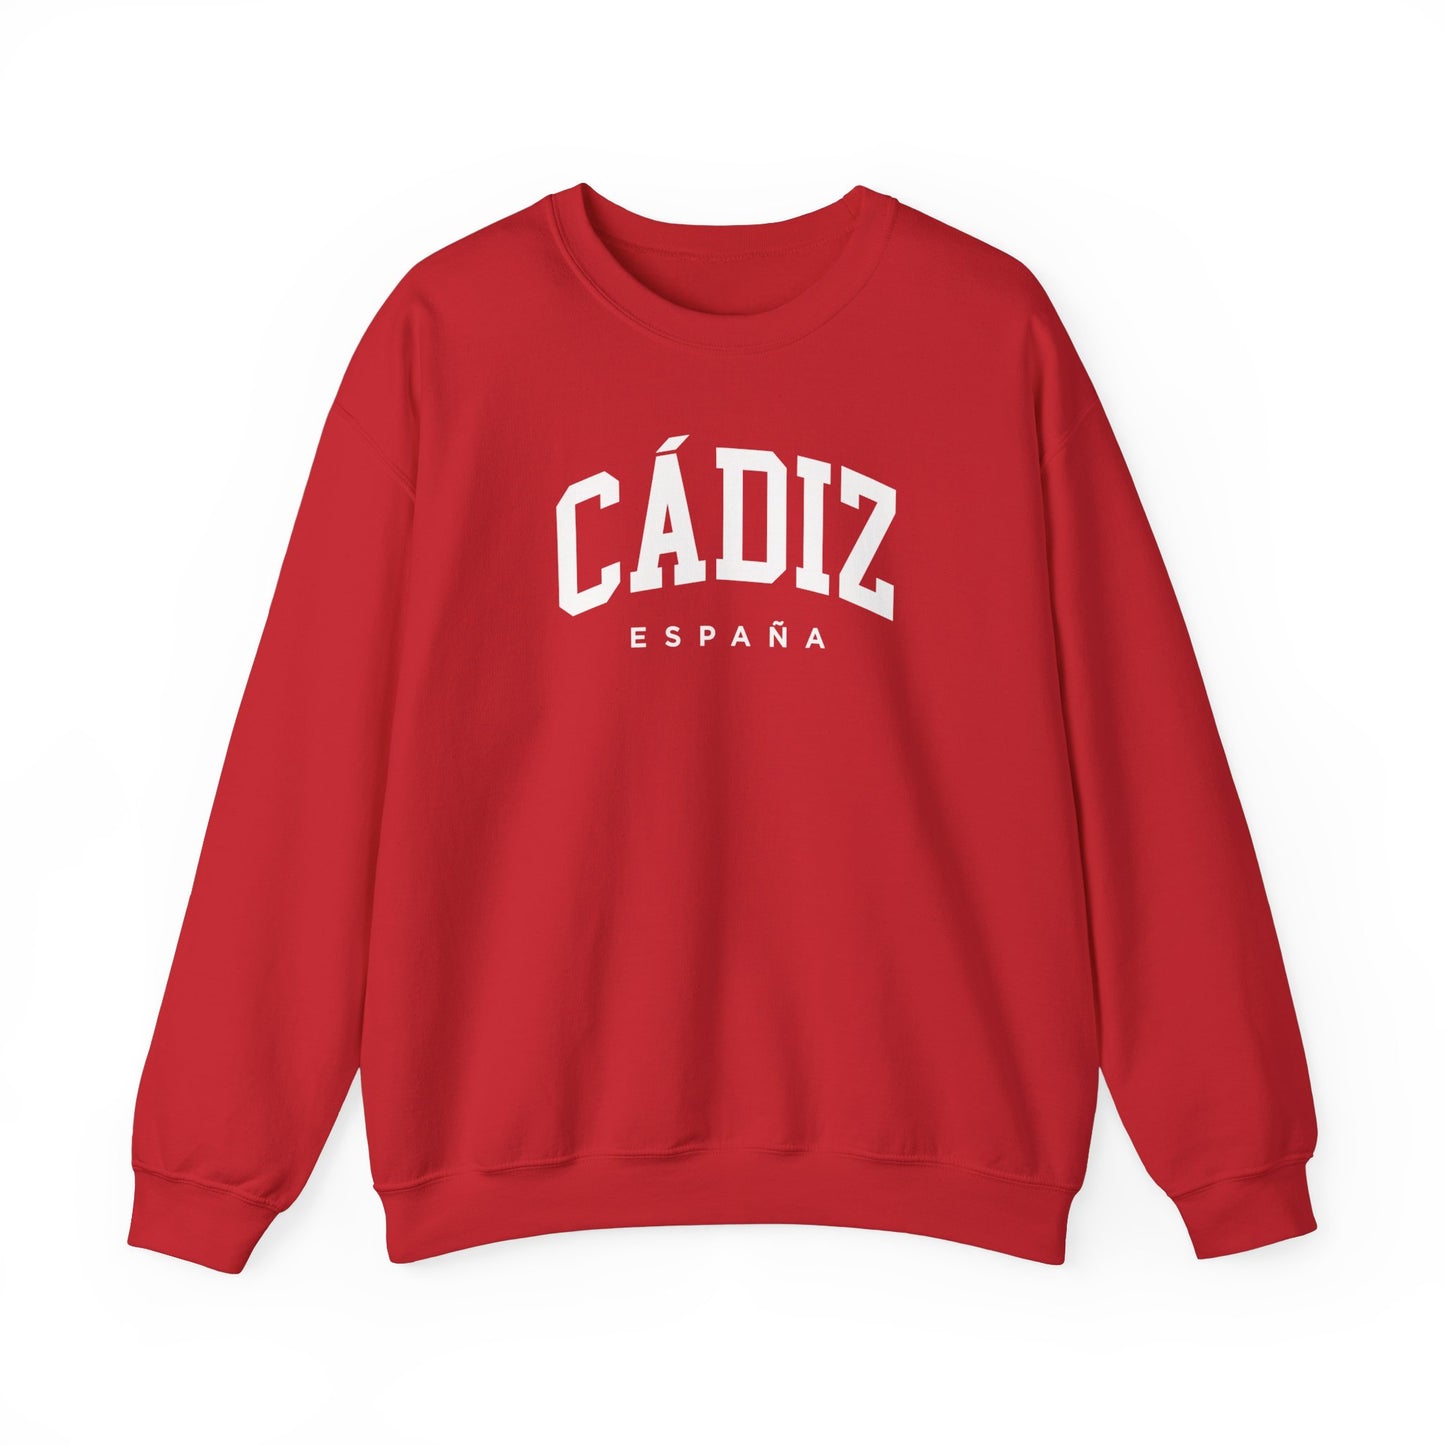 Cádiz Spain Sweatshirt